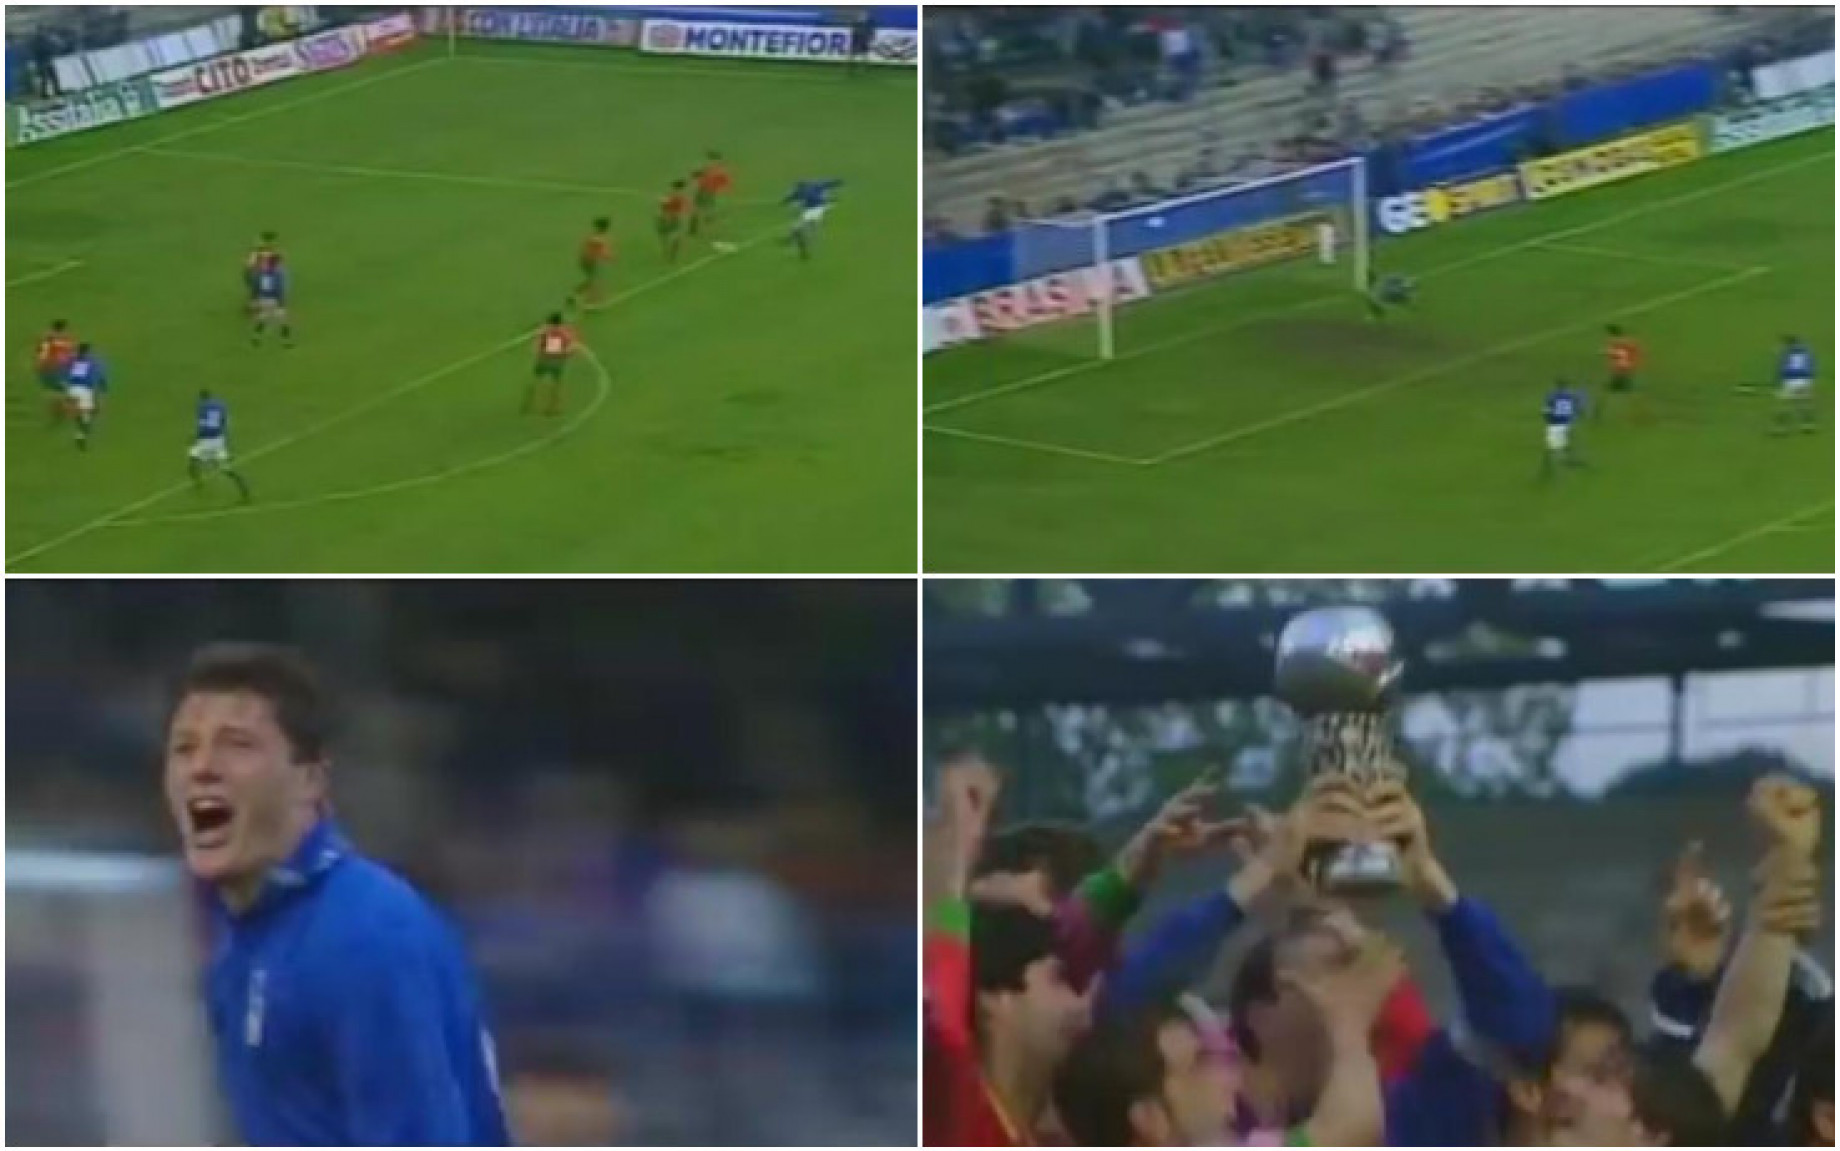 Orlandini_golden_gol_europei_under_21_1994_combo_screen_GDM.jpg